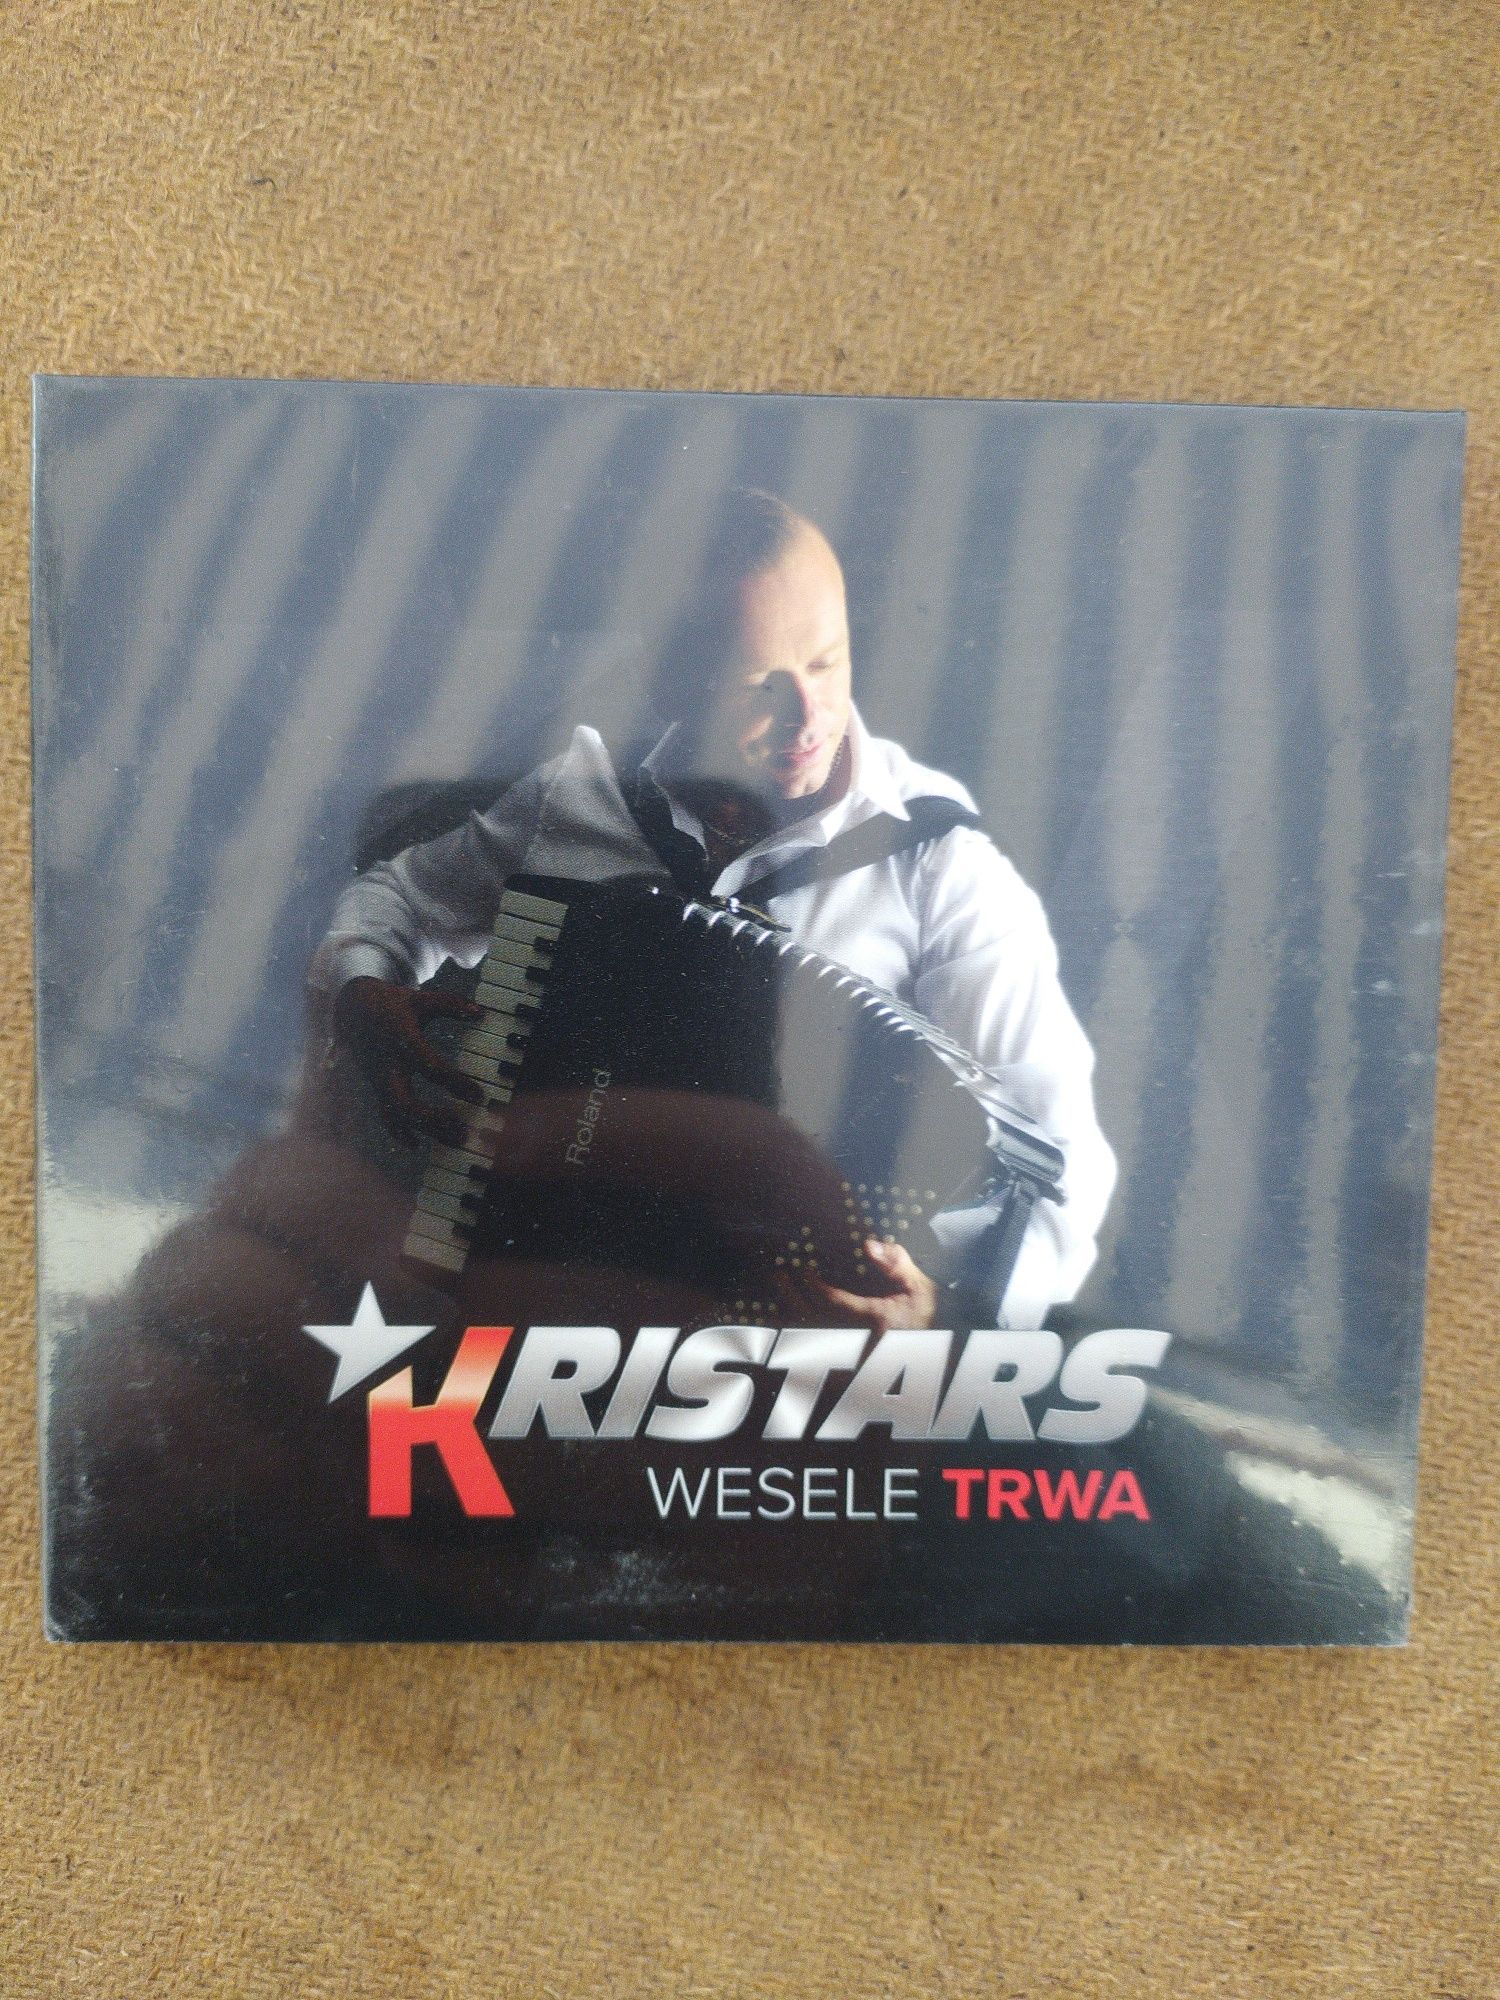 Płyta CD Kristars "Wesele Trwa" Nowa w oryginalnej folii